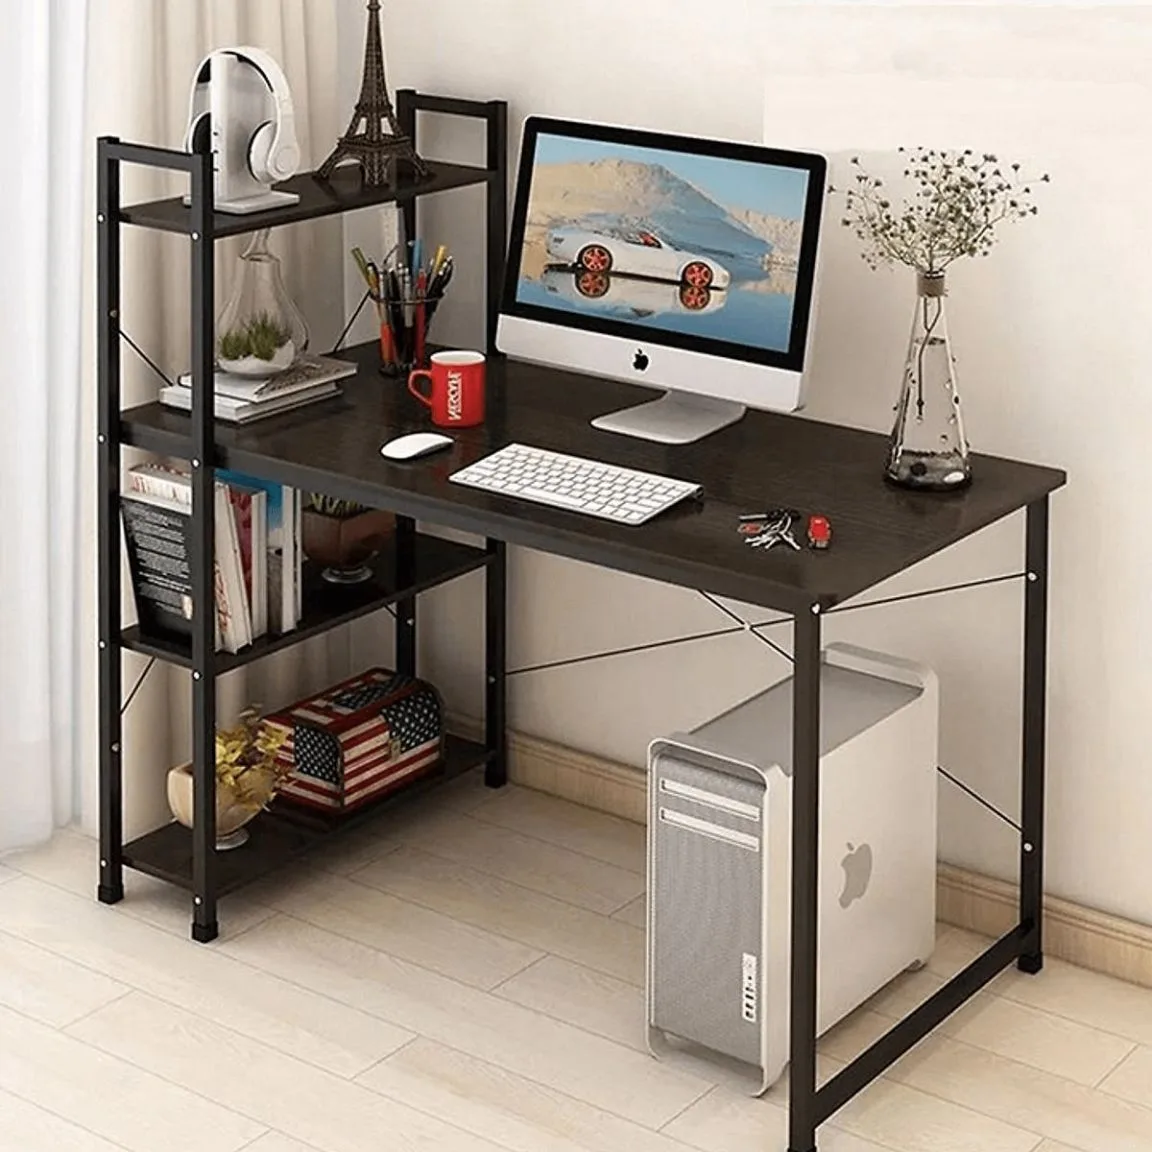 Lựa chọn các mẫu bàn để máy tính gọn đẹp có kích thước phù hợp với diện tích căn phòng